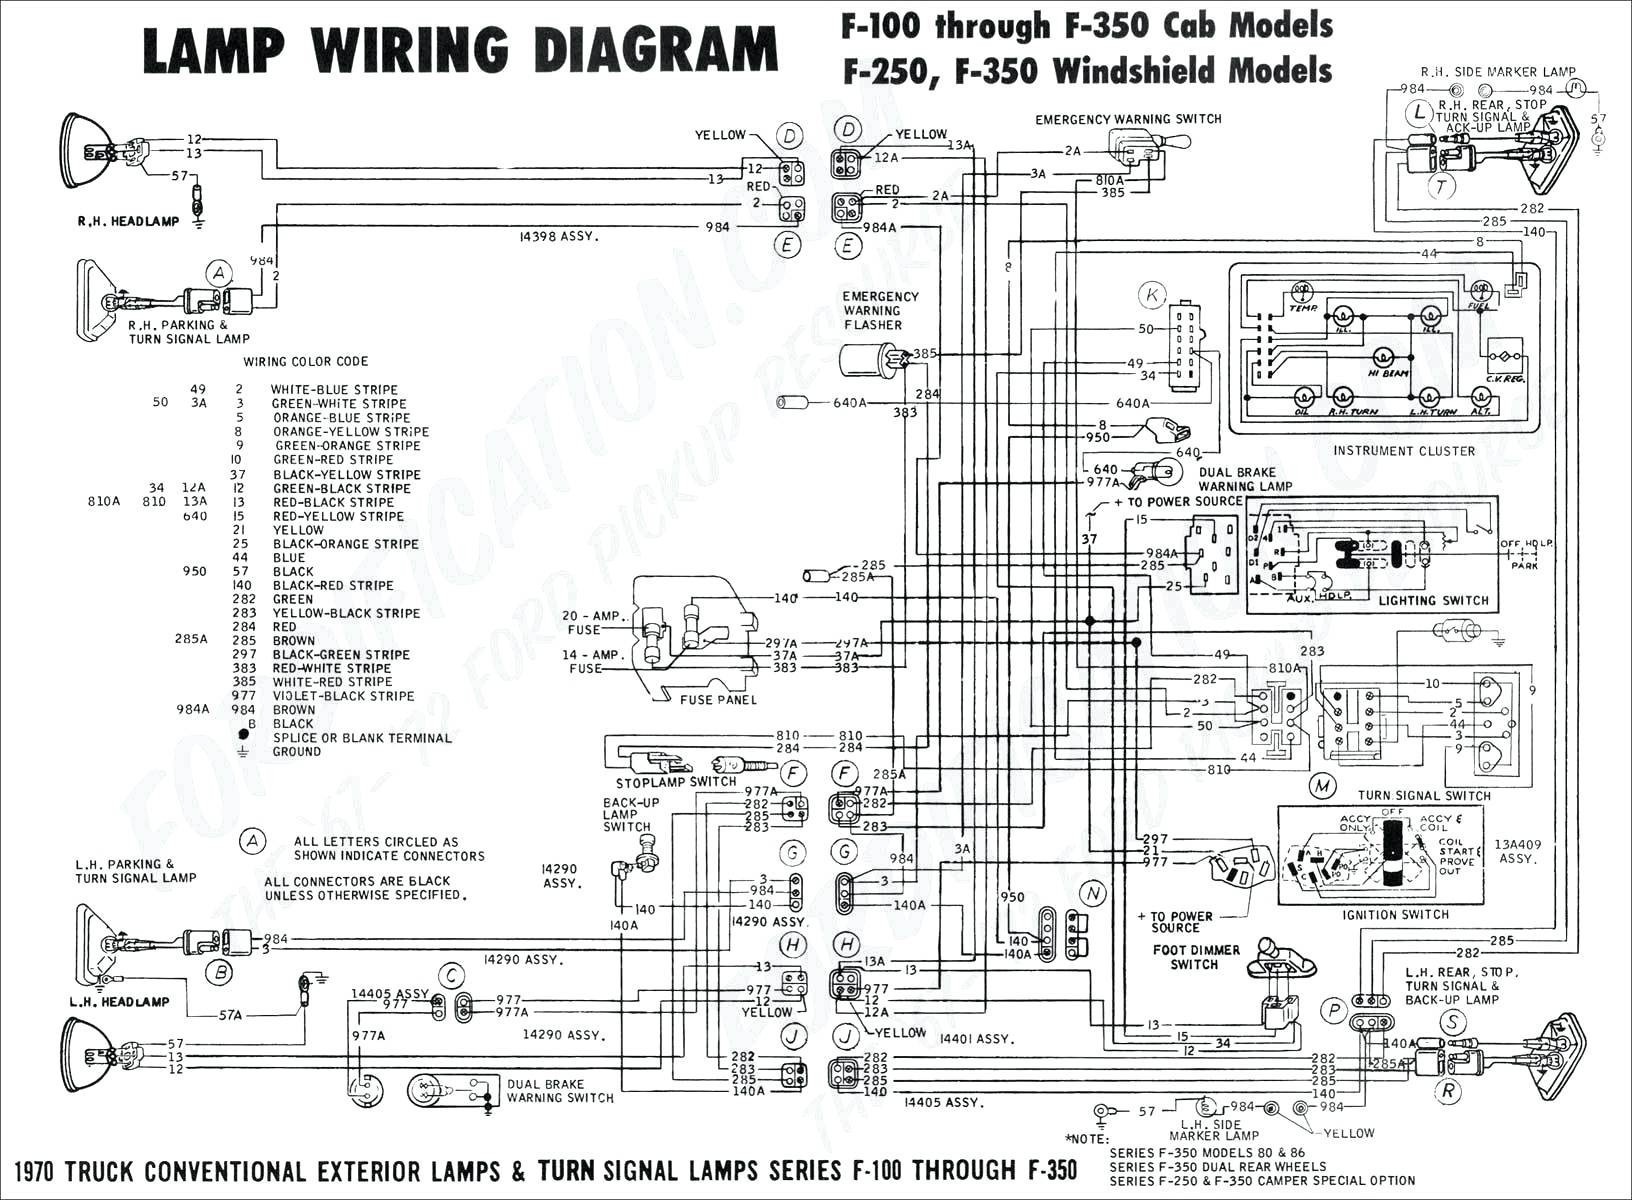 Plane Power Alternator Wiring Diagram Alternator Wiring Diagram Jeep Fresh E30 Alternator Wiring Diagram Wire